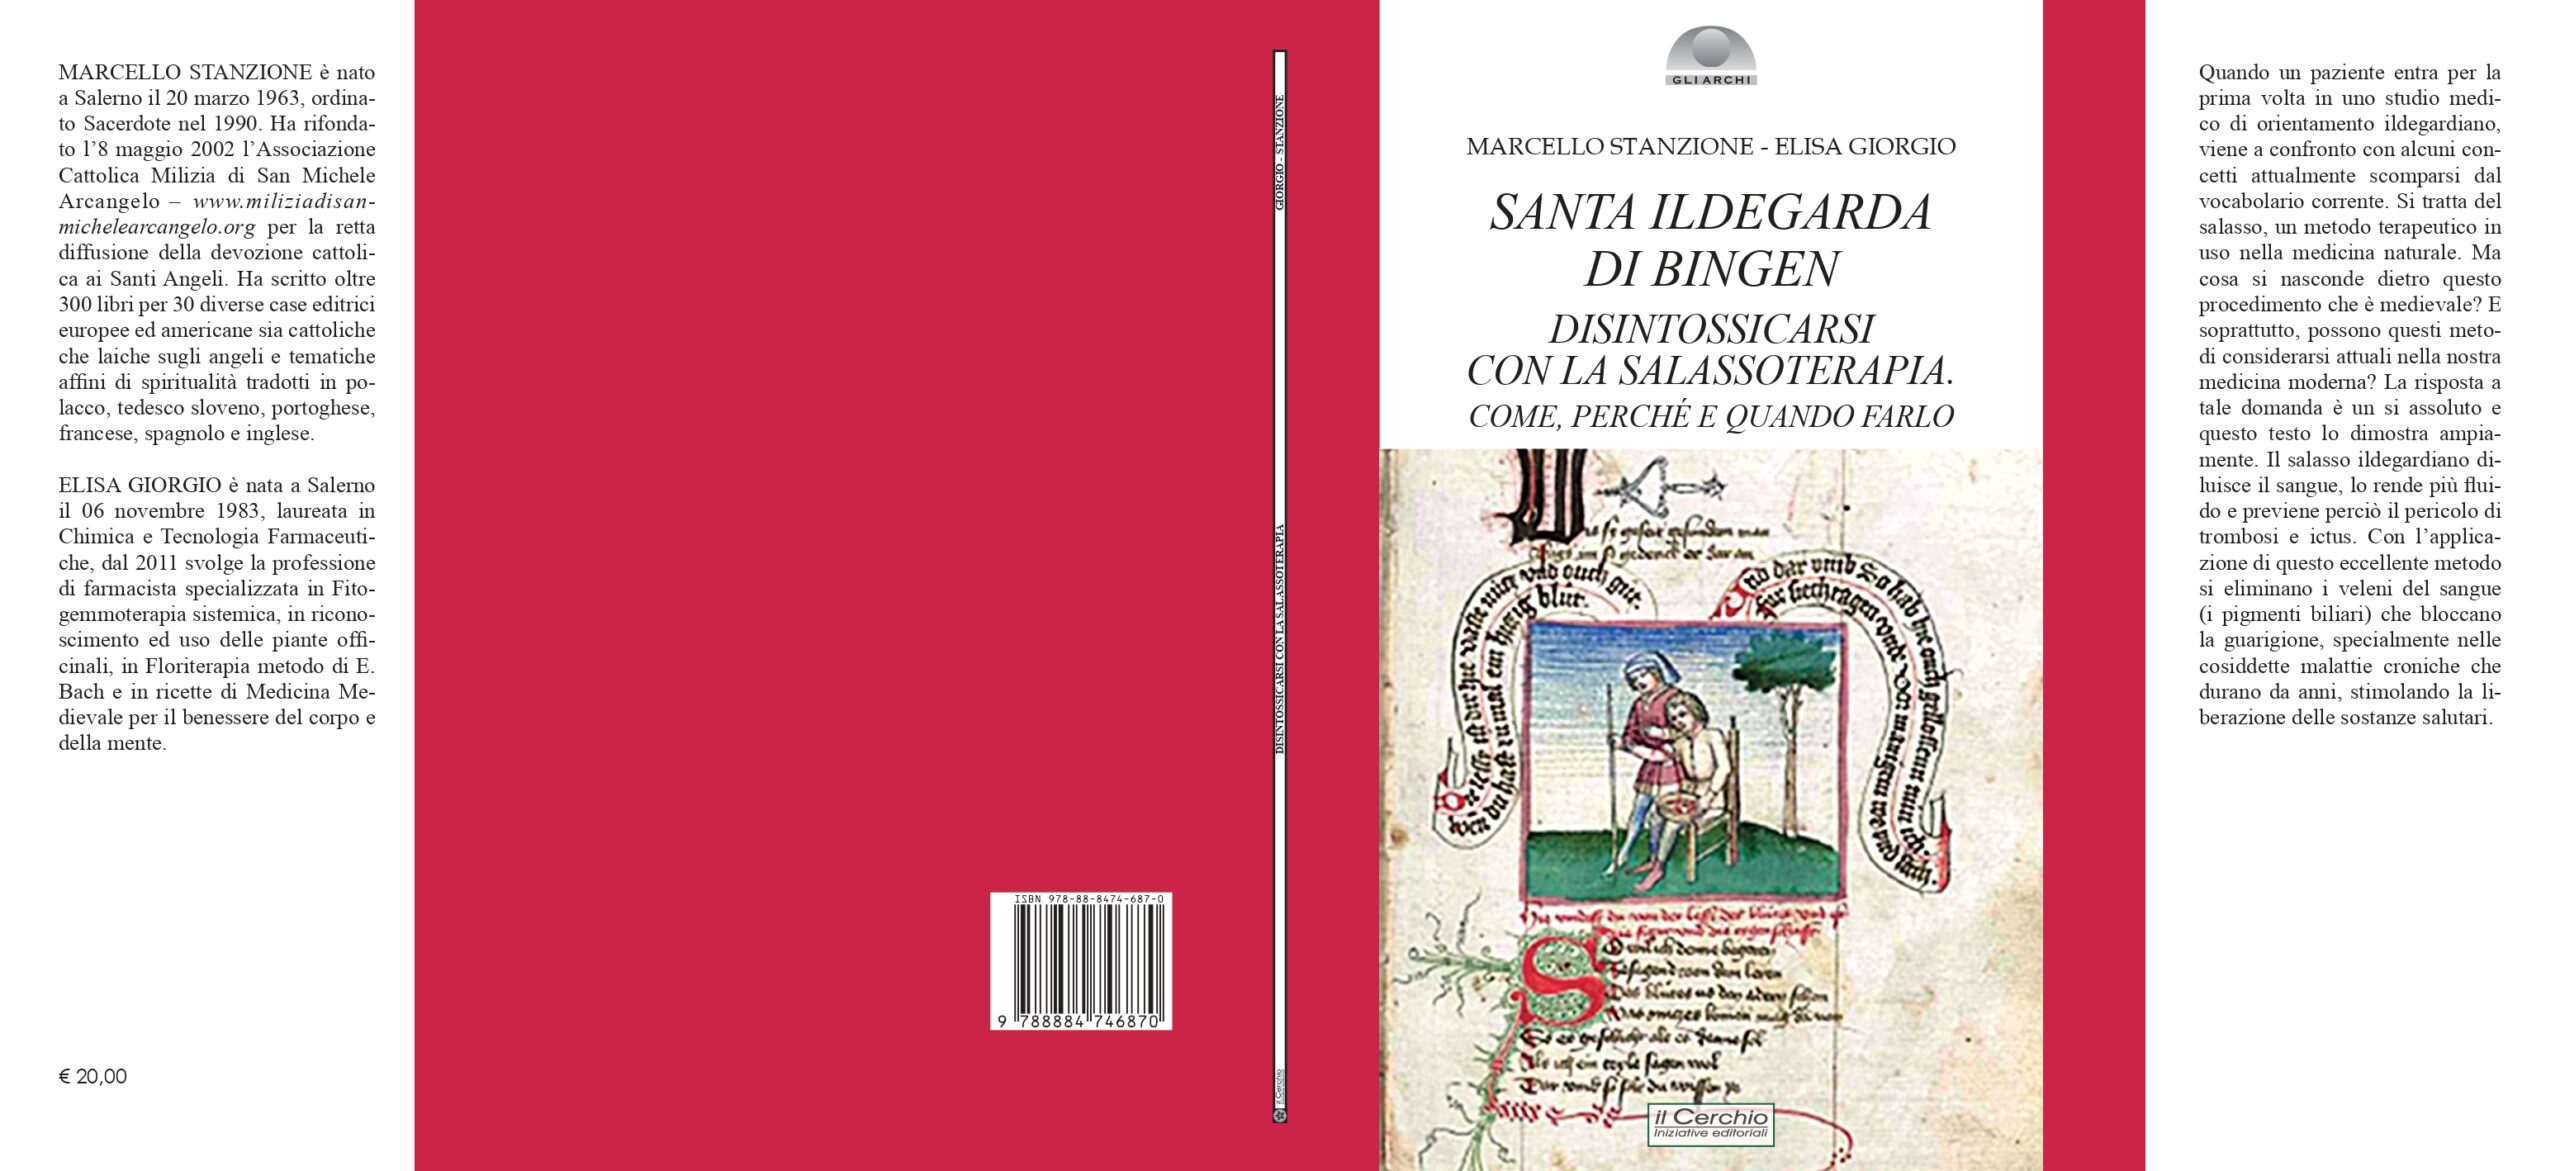 Libro su salasso secondo Santa Ildegarda di Bingen